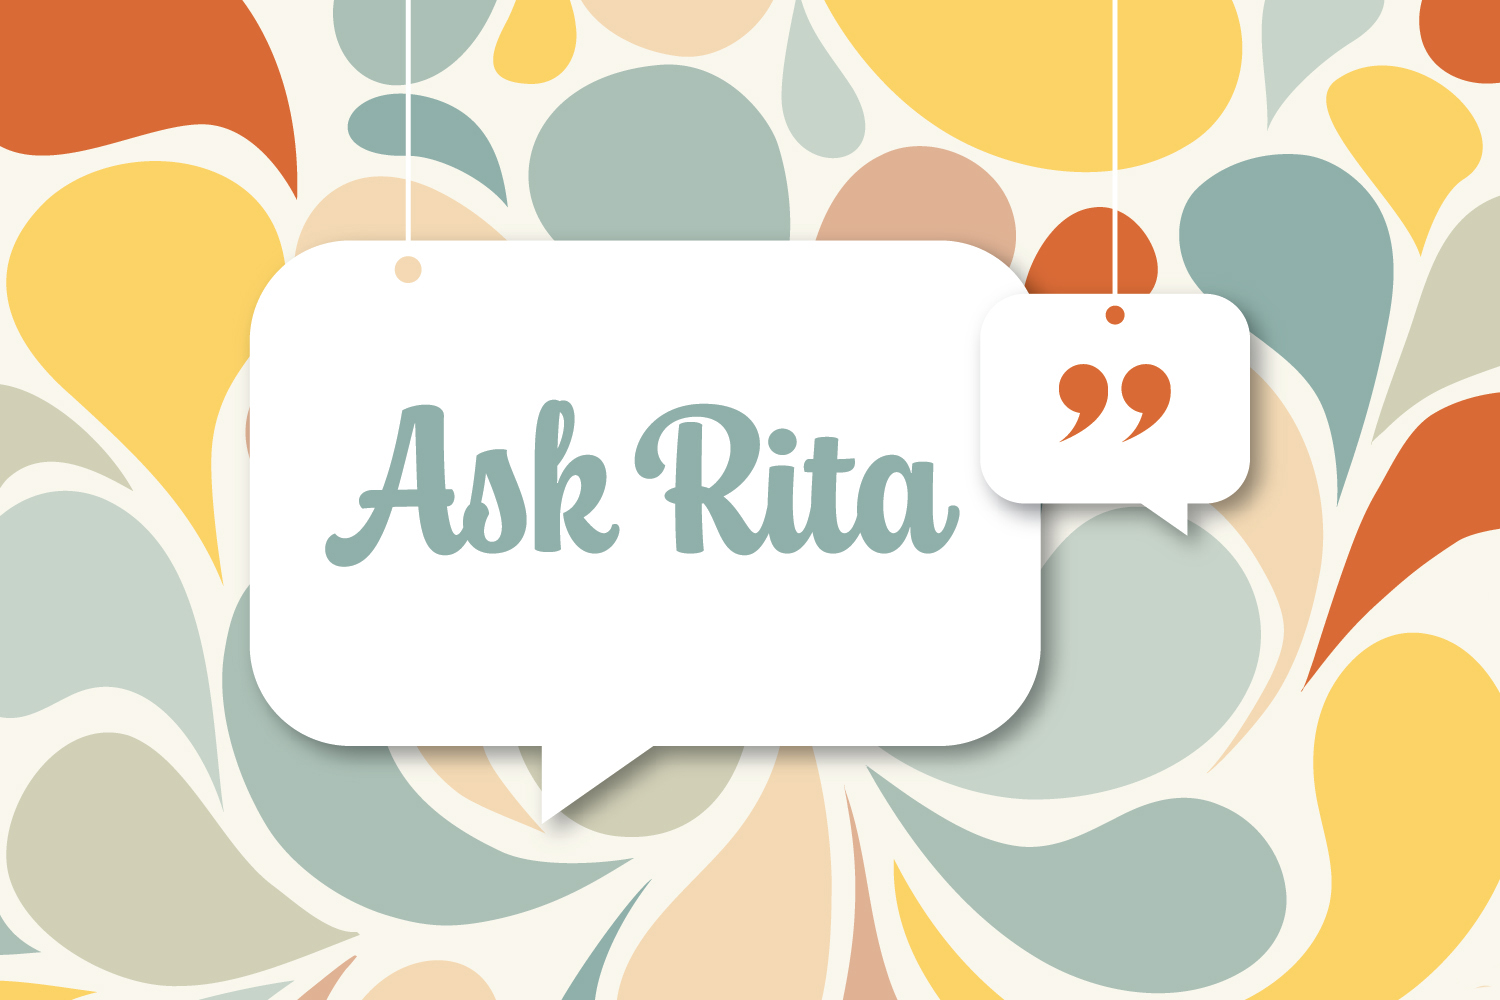 Ask Rita: How Do We Stop Bullying Behavior?